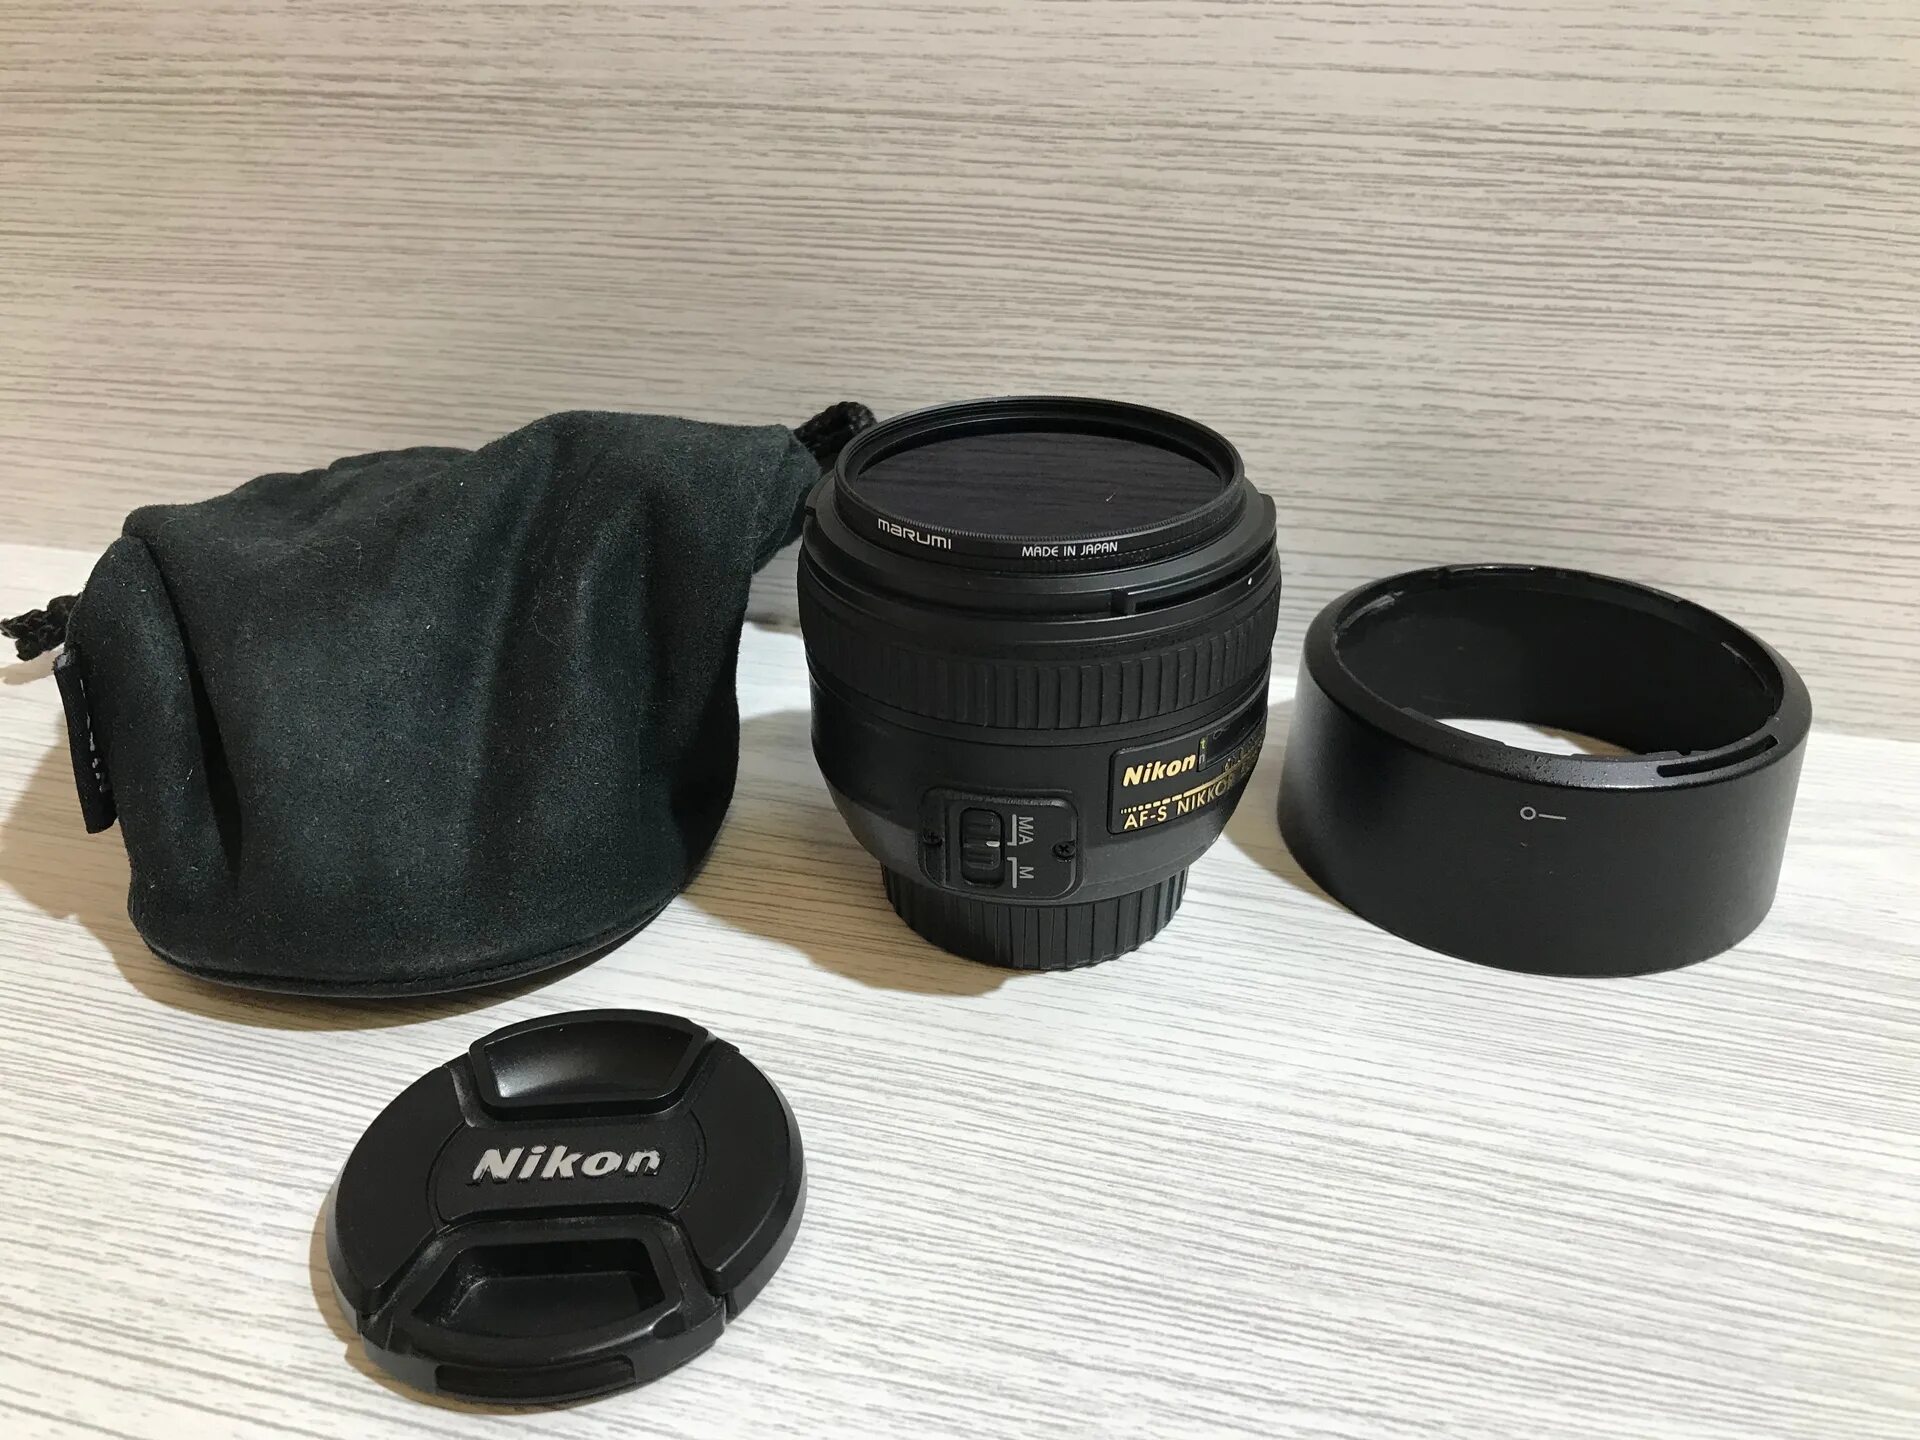 Nikkor 50mm g af s. Nikon 50mm f/1.4g af-s. 50mm 1.4 af-s Nikon. Nikon 50mm f/1.4g af-s Nikkor. Nikon af Nikkor 50mm f/1.4 d Japan.